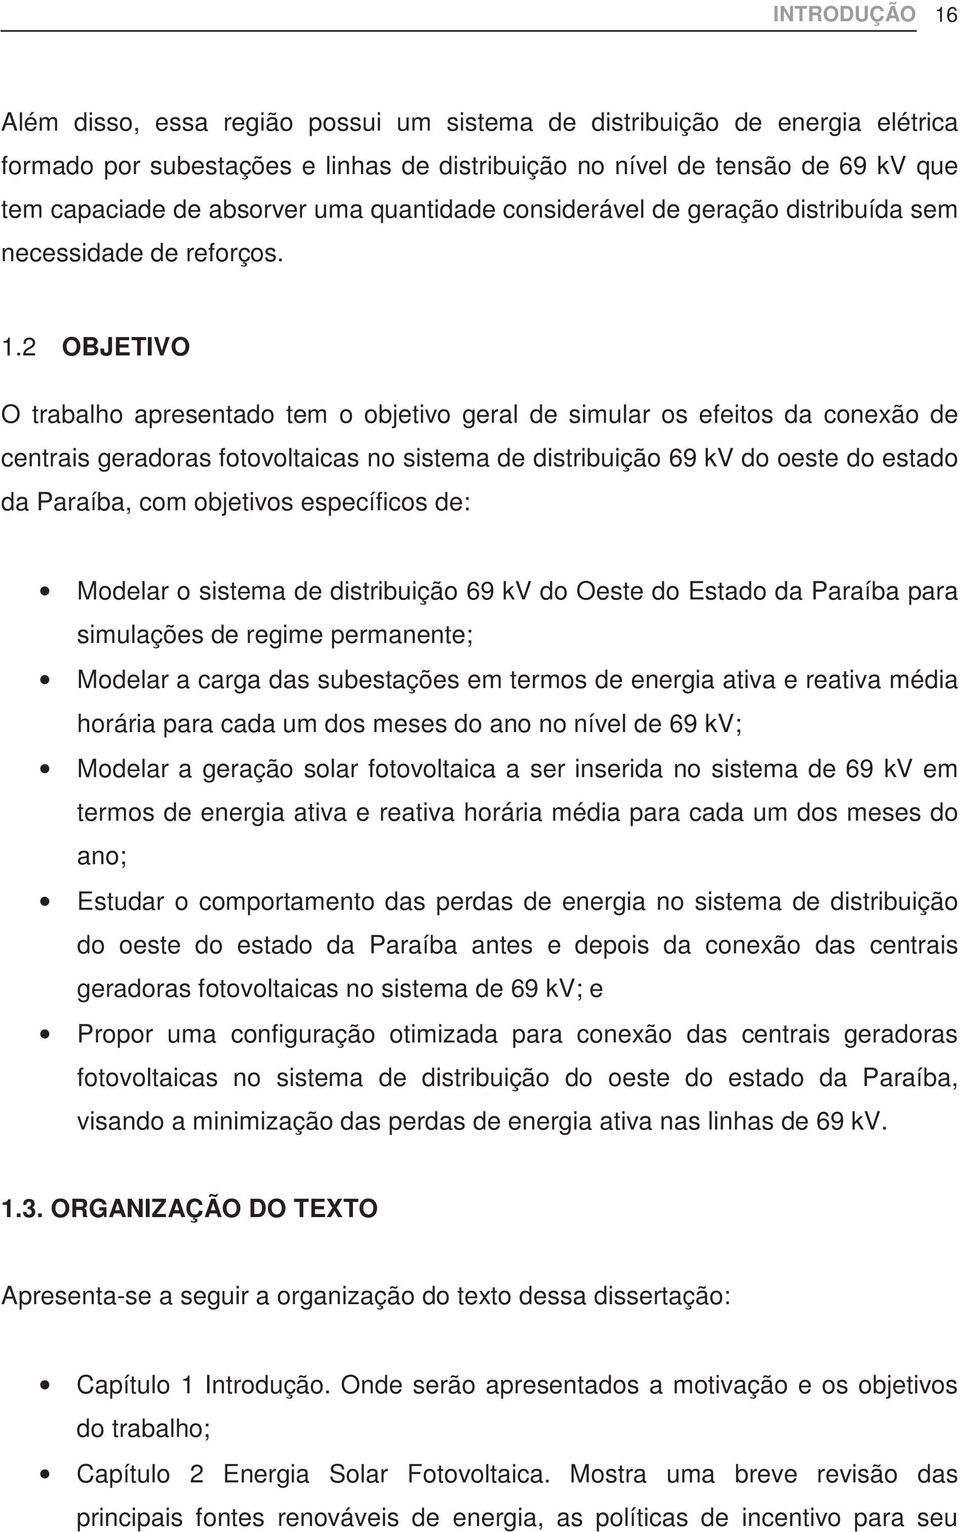 2 OBJETIVO O trabalho apresentado tem o objetivo geral de simular os efeitos da conexão de centrais geradoras fotovoltaicas no sistema de distribuição 69 kv do oeste do estado da Paraíba, com